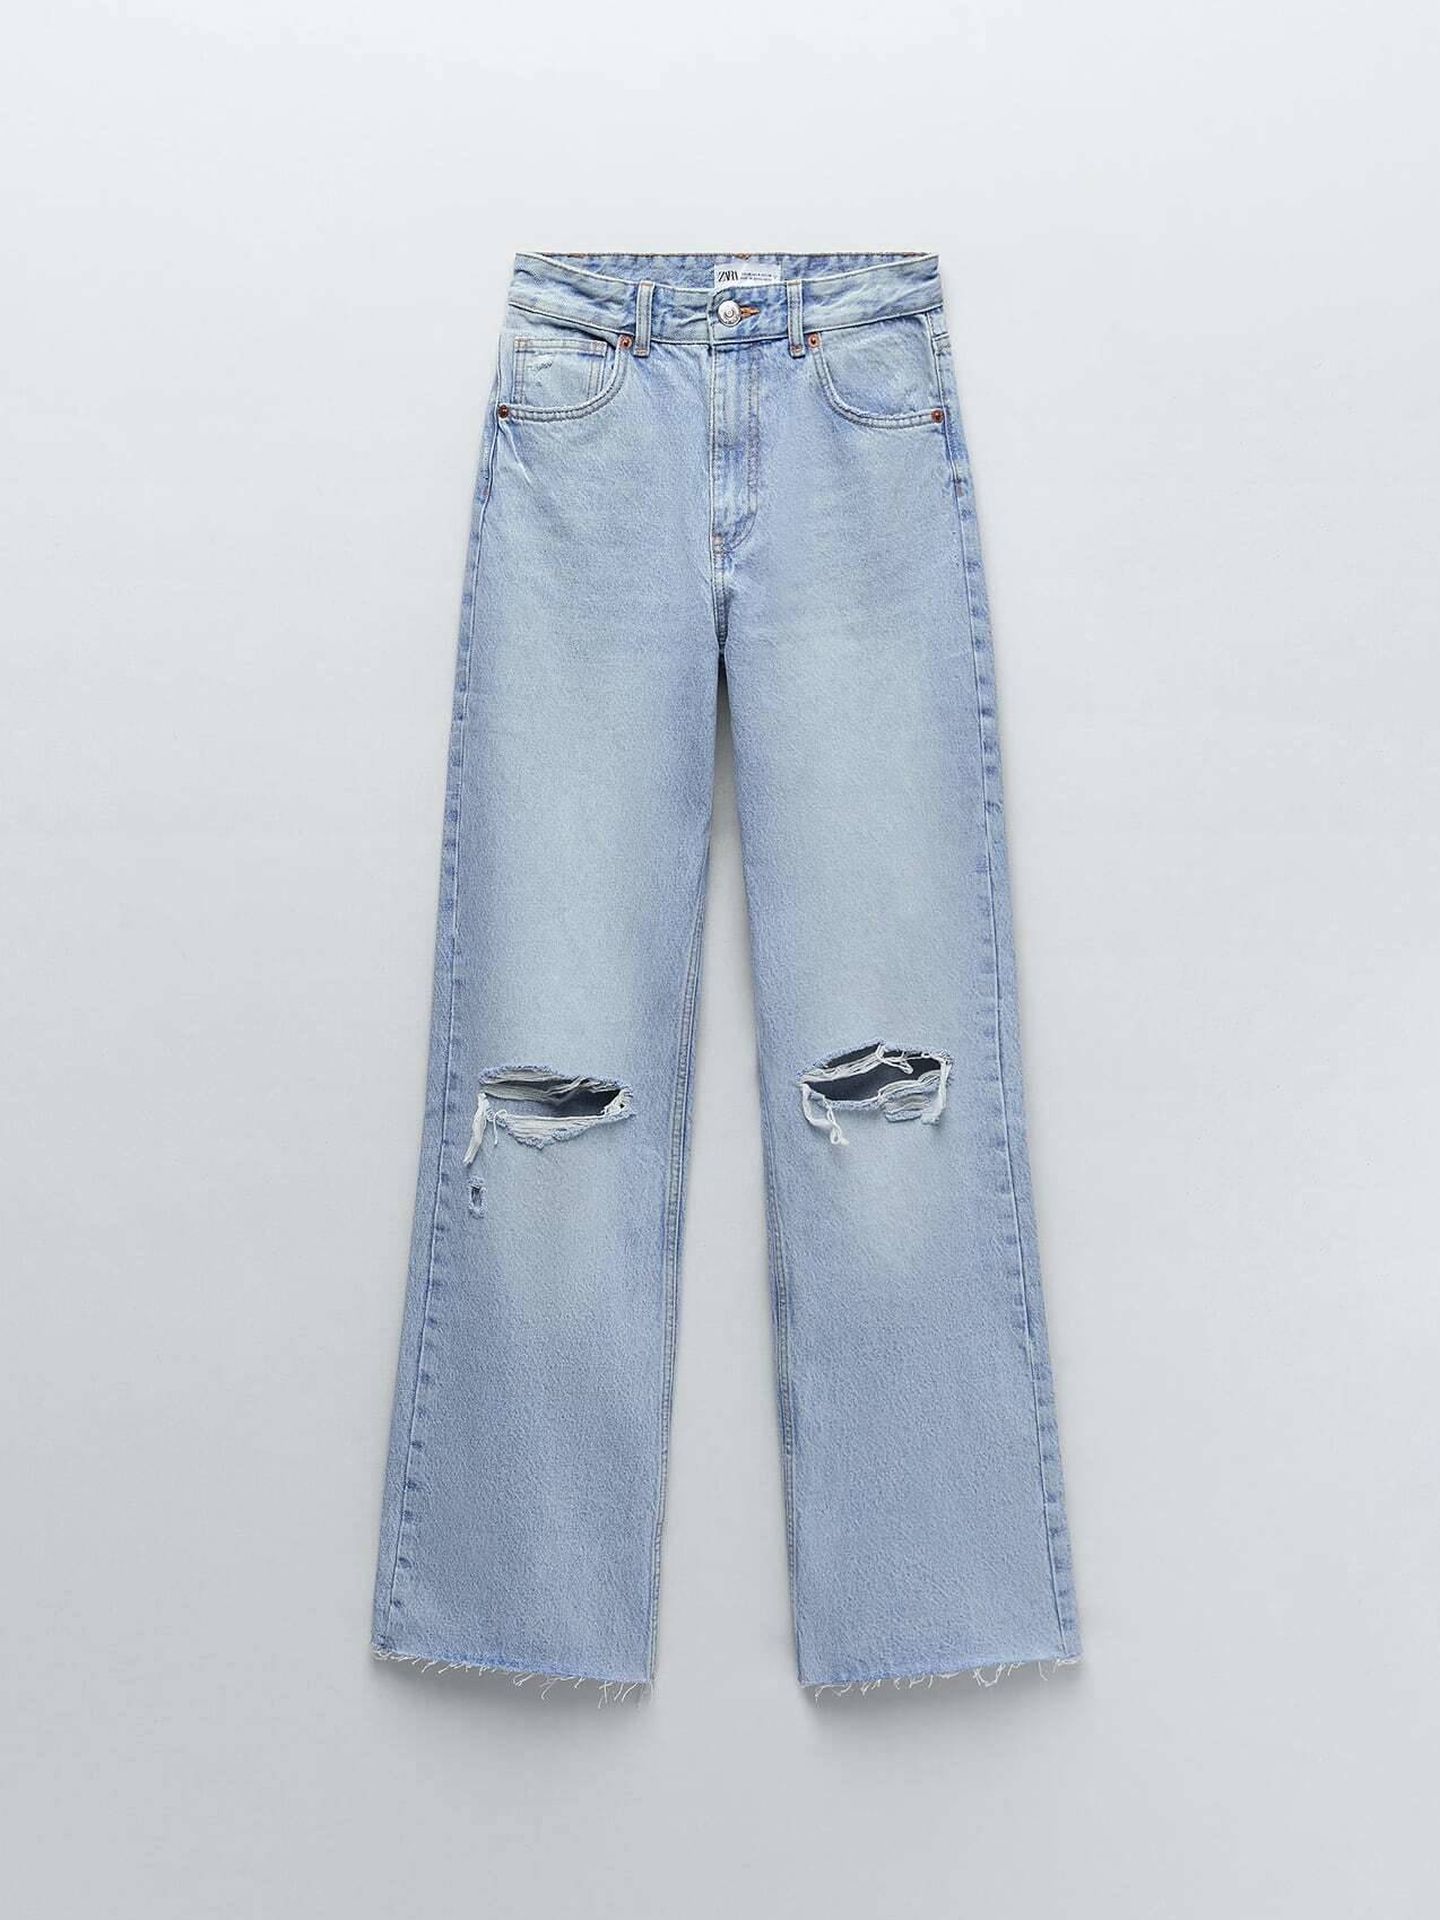 Lo nuevos jeans de Zara. (Cortesía)